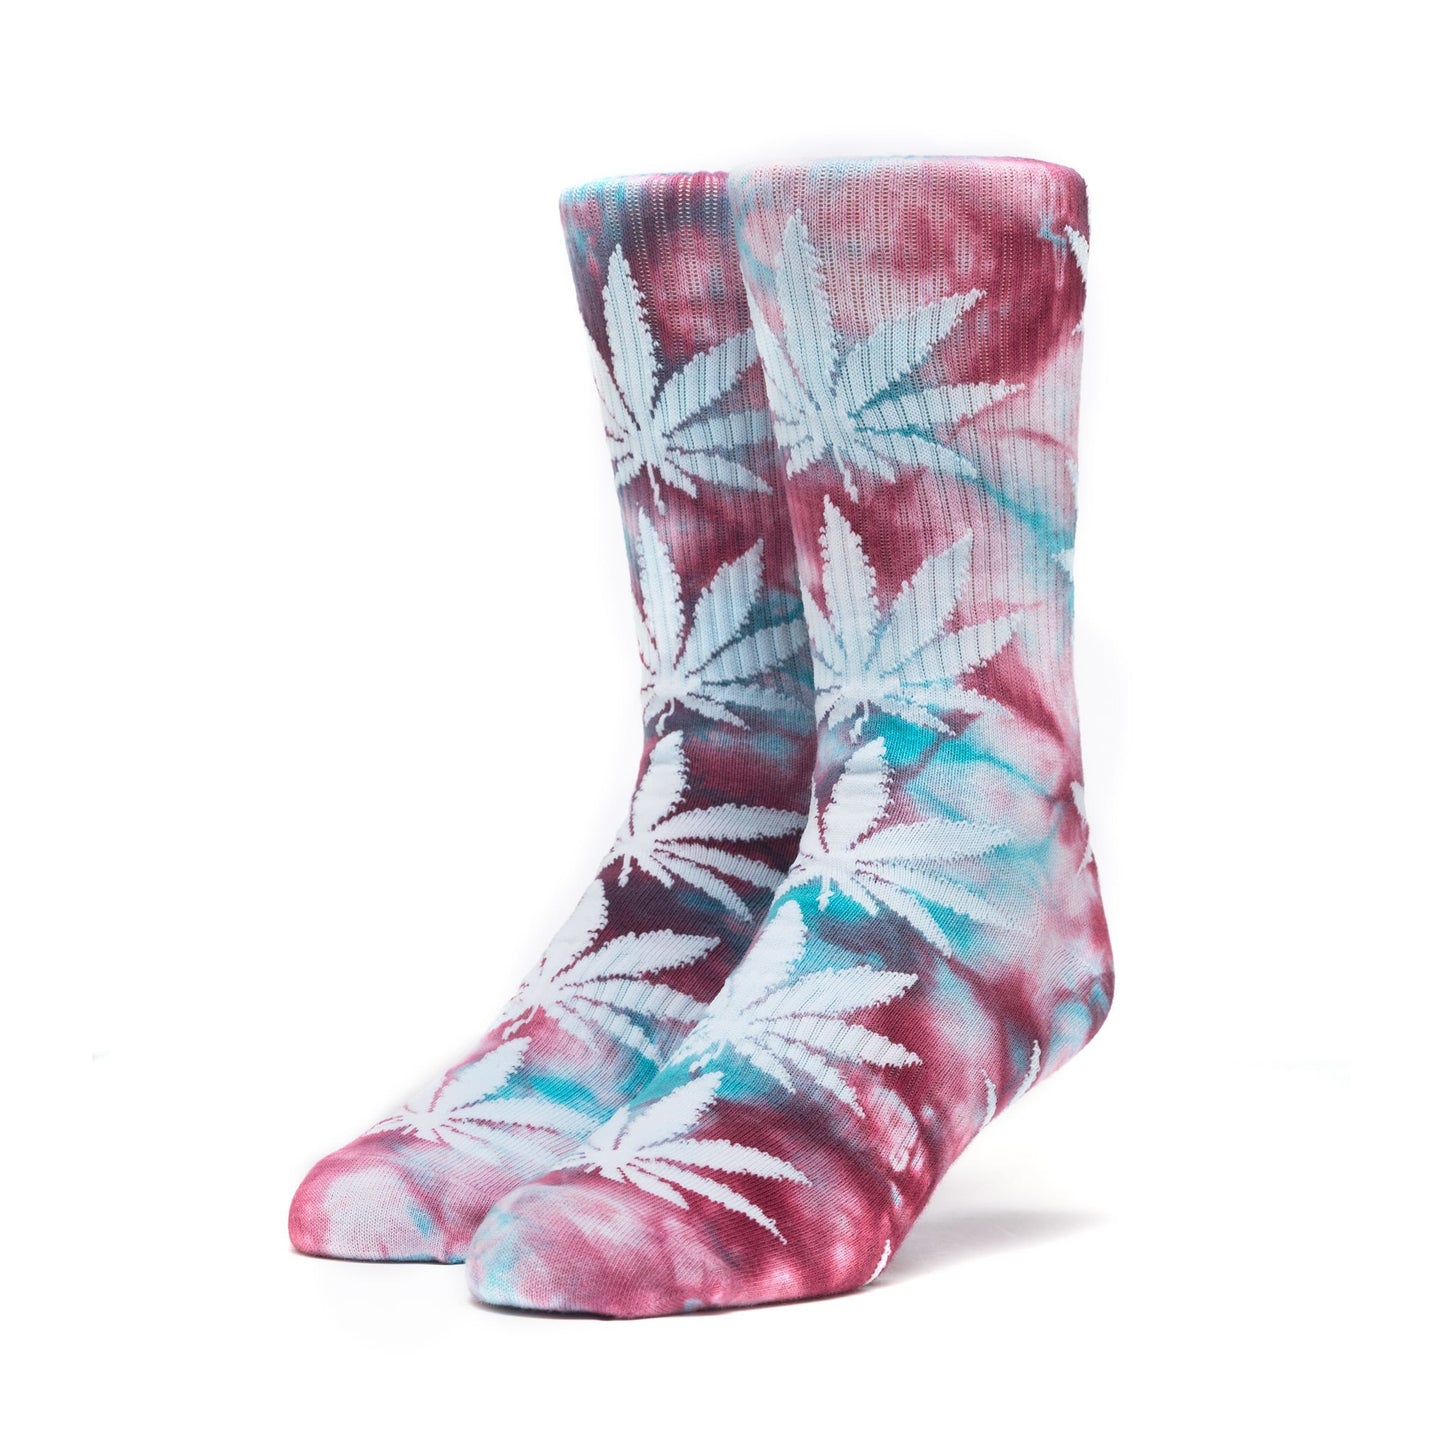 HUF - Plantlife Crystal Wash Socks, Port Royale